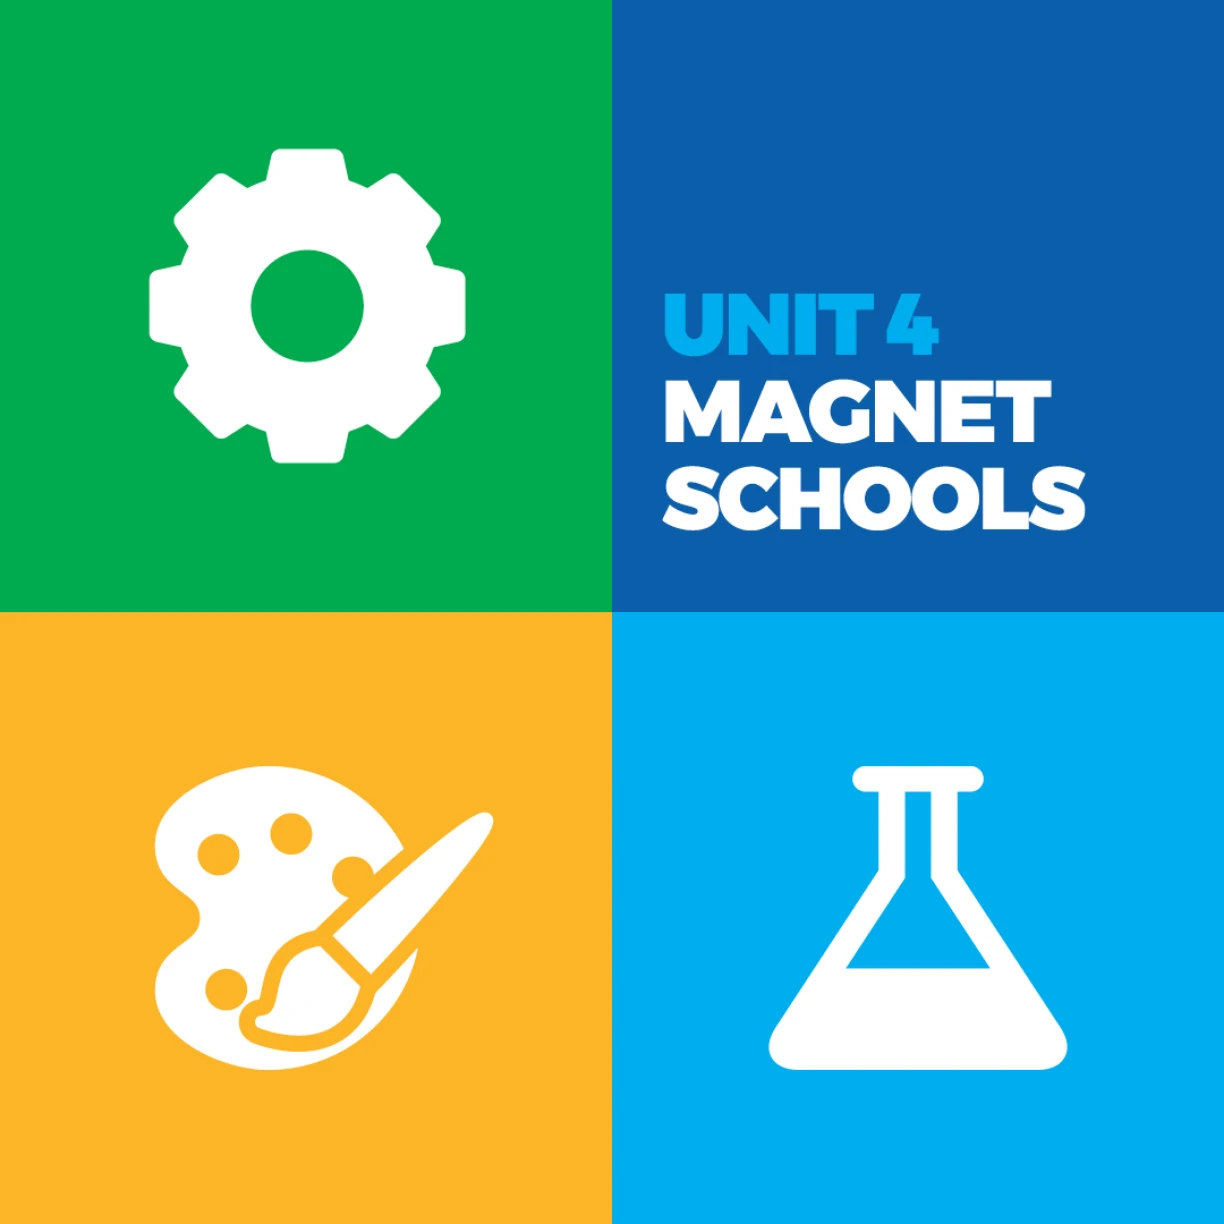 Unit & magnet schools logo.